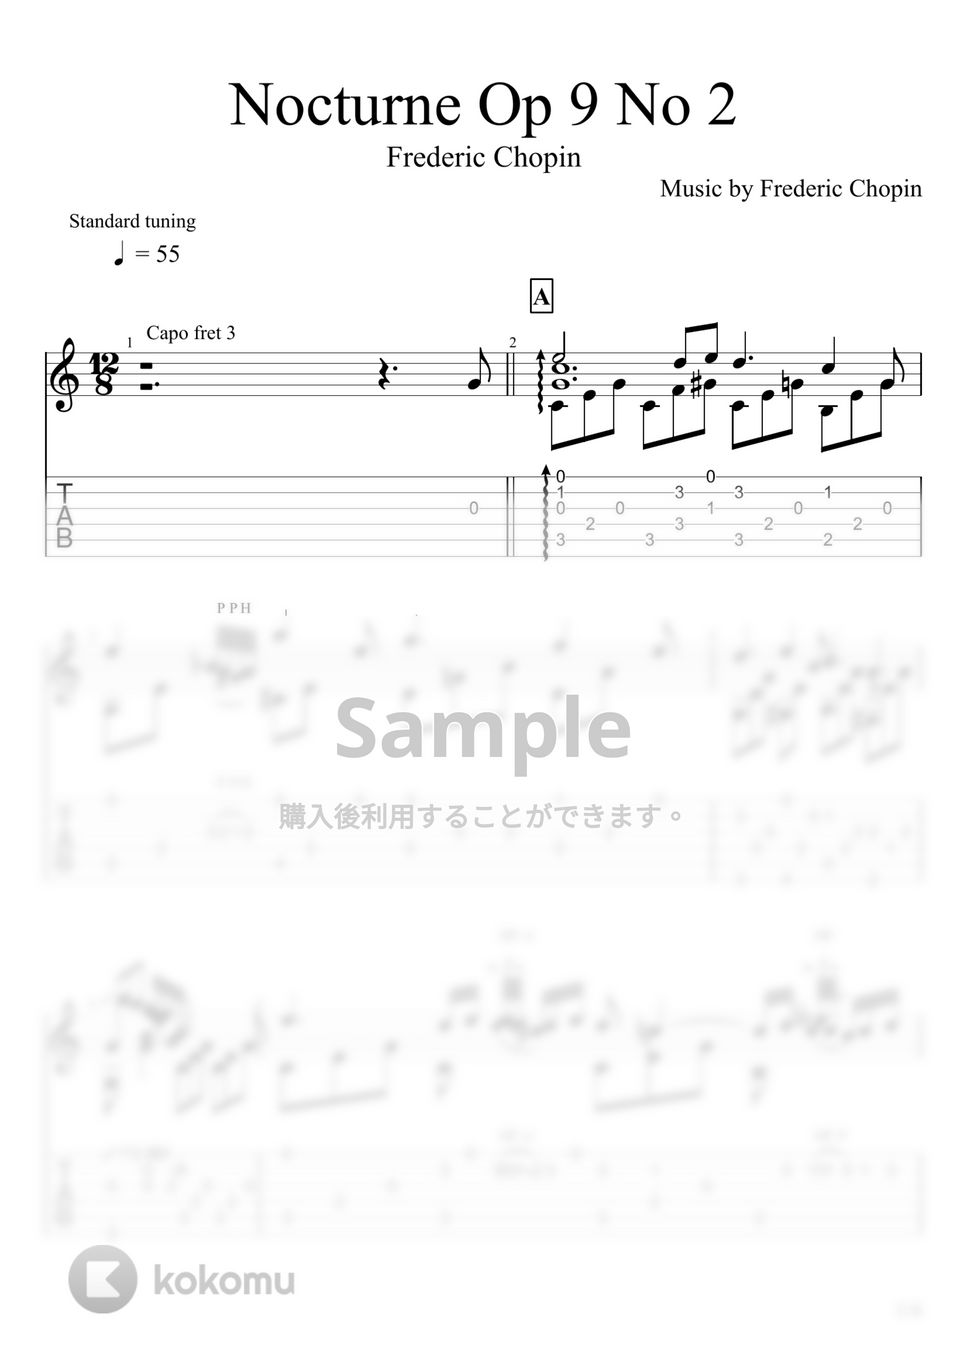 Chopin - Nocturne Op 9 No 2(夜想曲第2番) (ソロギター) by u3danchou